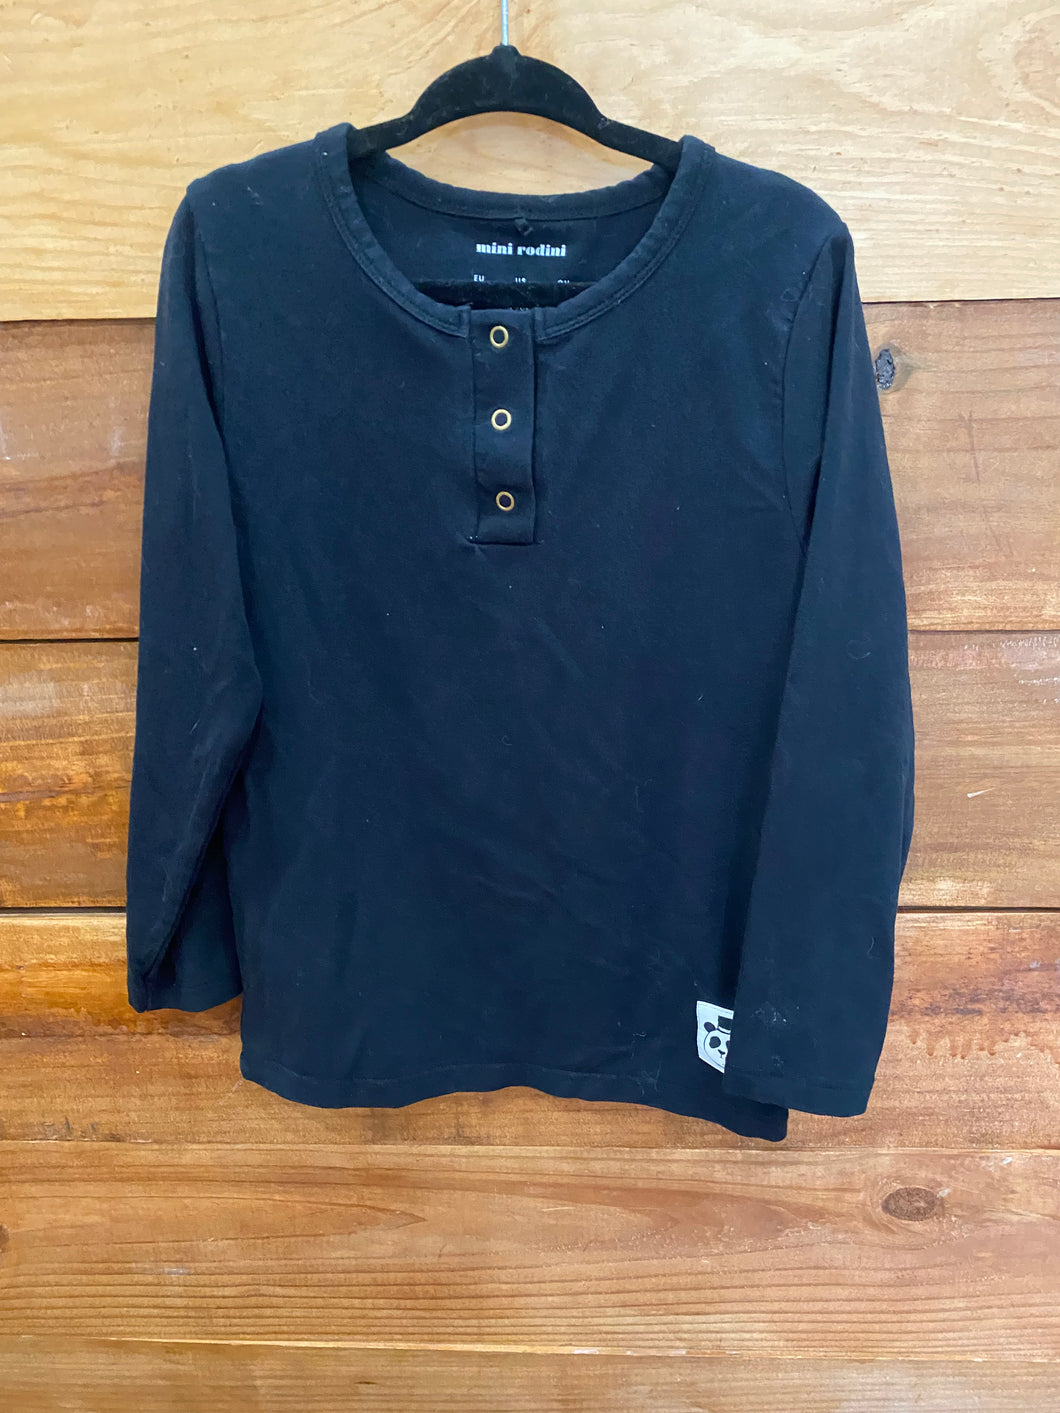 Mini Rodini Black Shirt Size 4-5Y